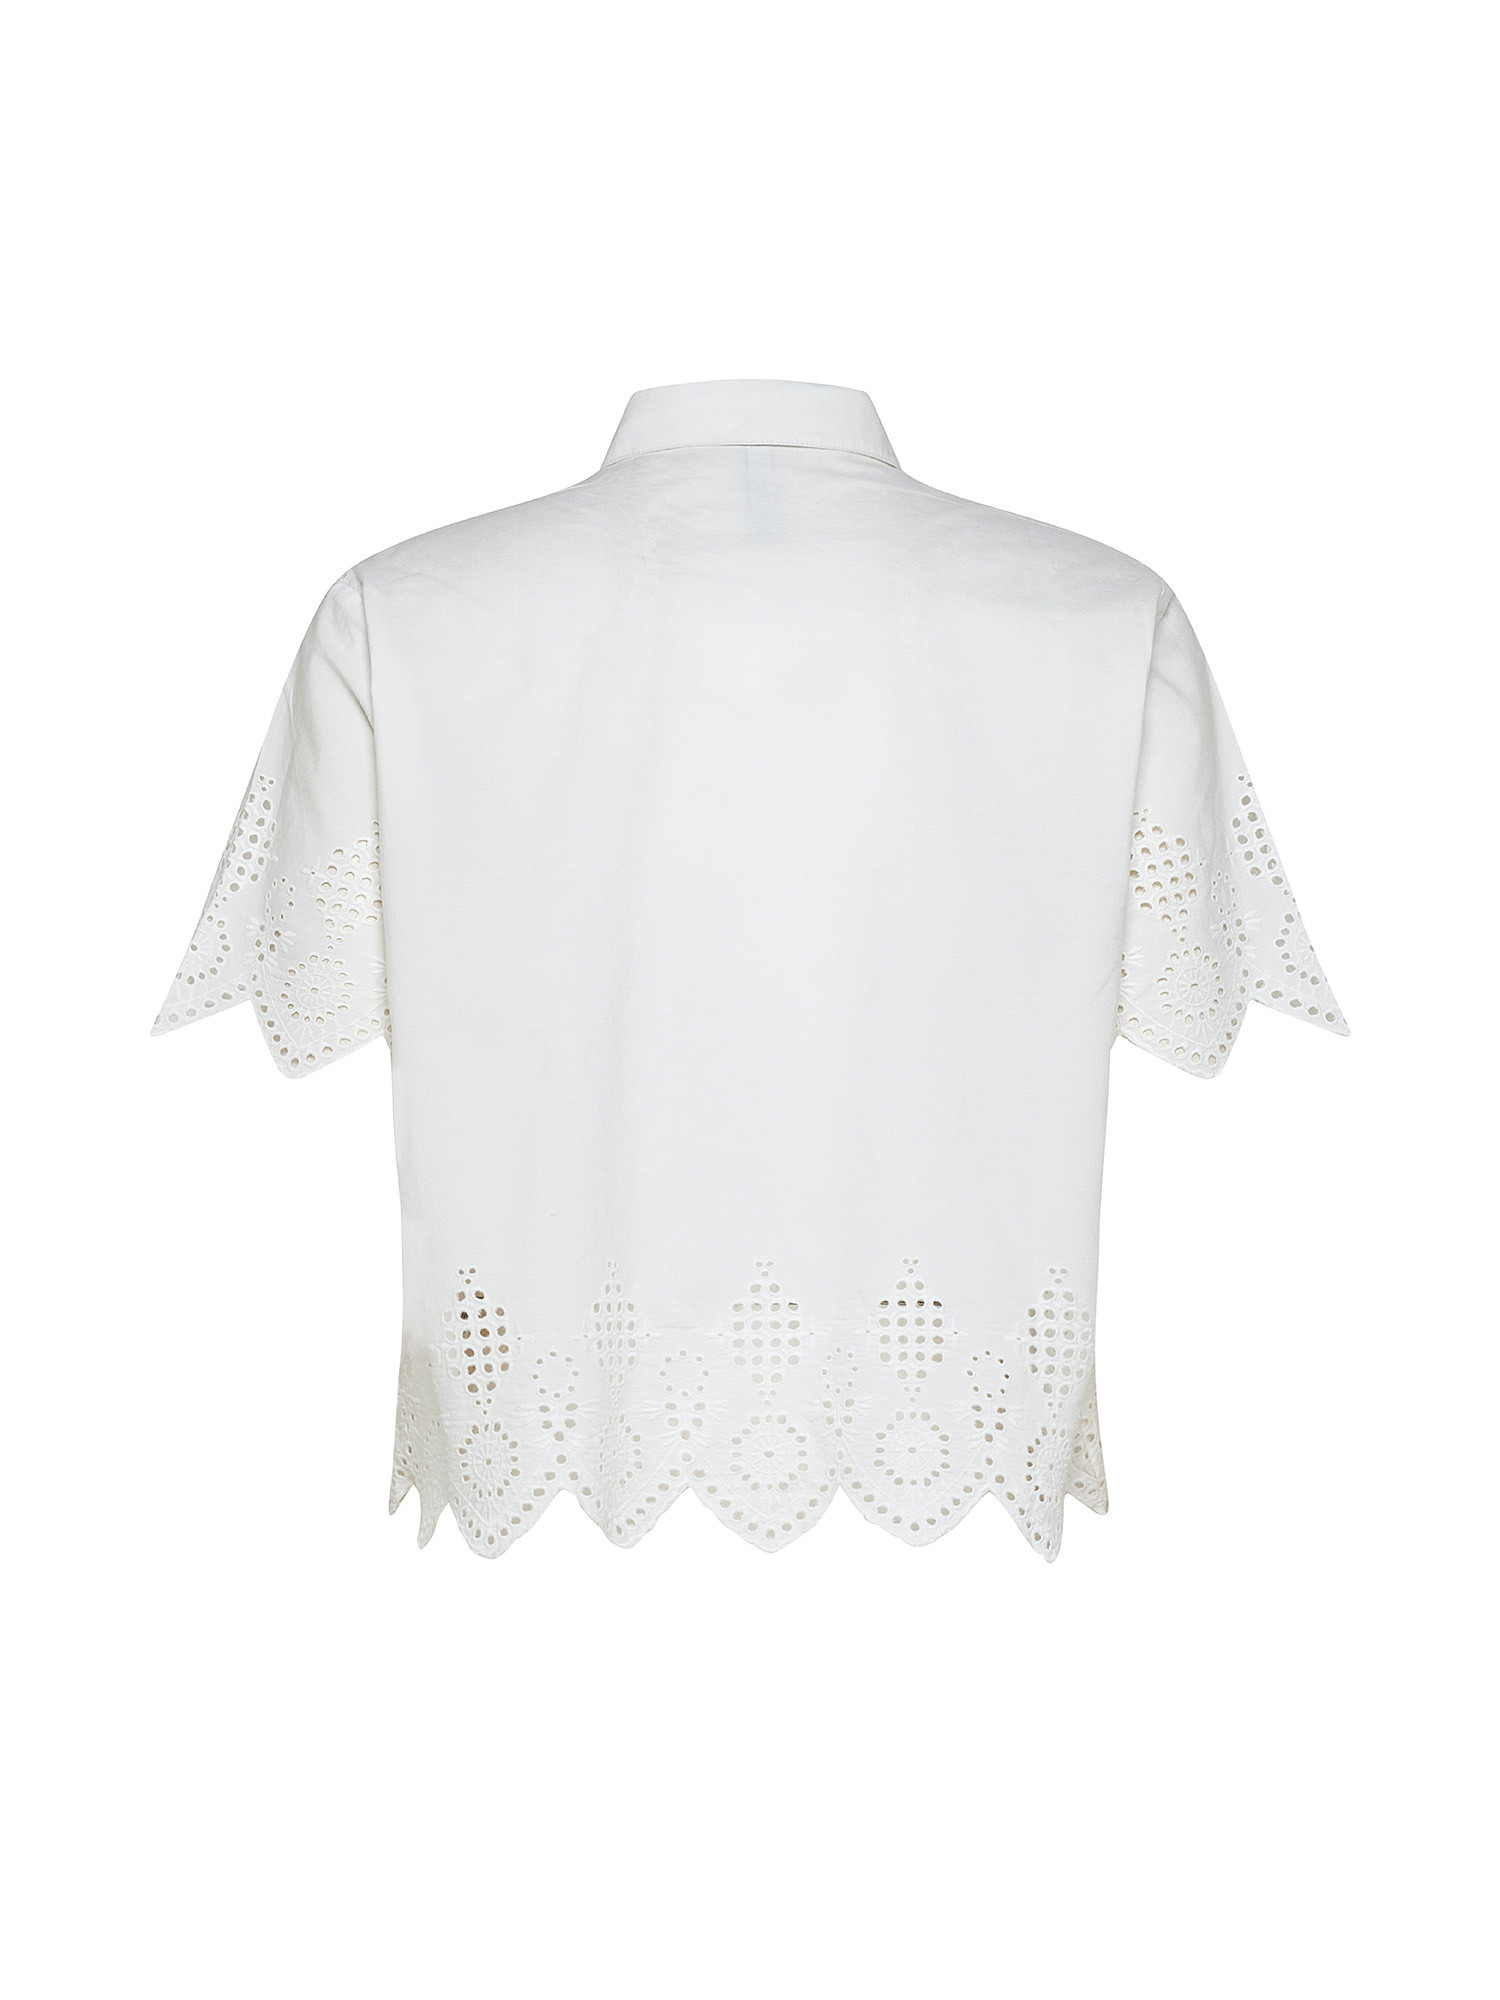 Camicia con dettaglio traforato laura, Bianco, large image number 1